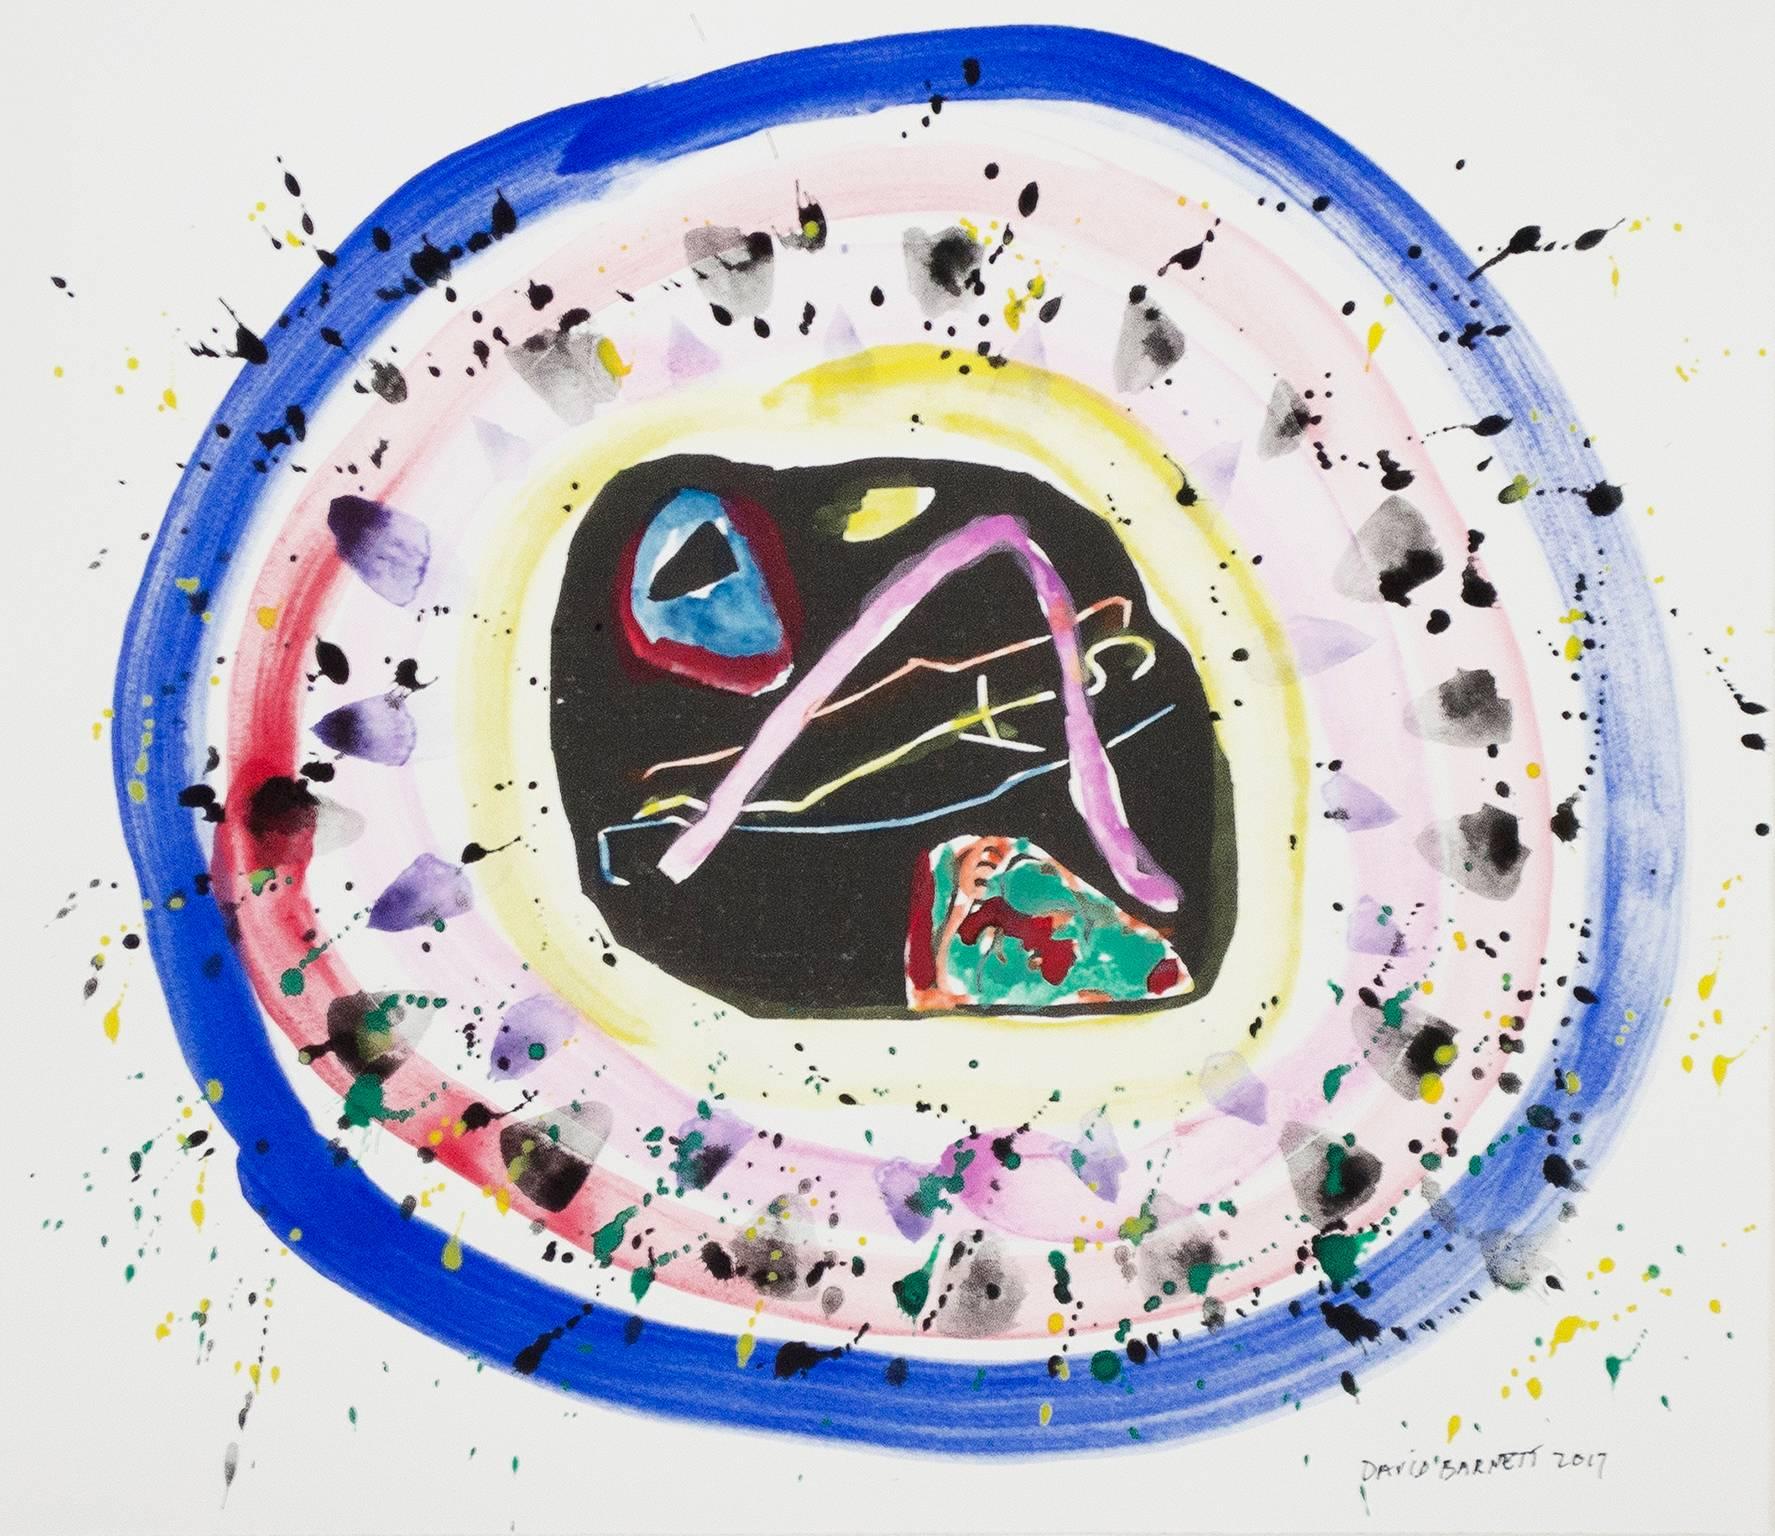 Berühmte Künstler Serie: Hommage an Wassily Kandinsky nach 1911 "Colorful Meadow" (seitenverkehrt) Holzschnitt aus Klange (Sounds) Ser." ist ein Original-Aquarell auf Papier von David Barnett. Der Künstler hat das Werk unten rechts signiert und